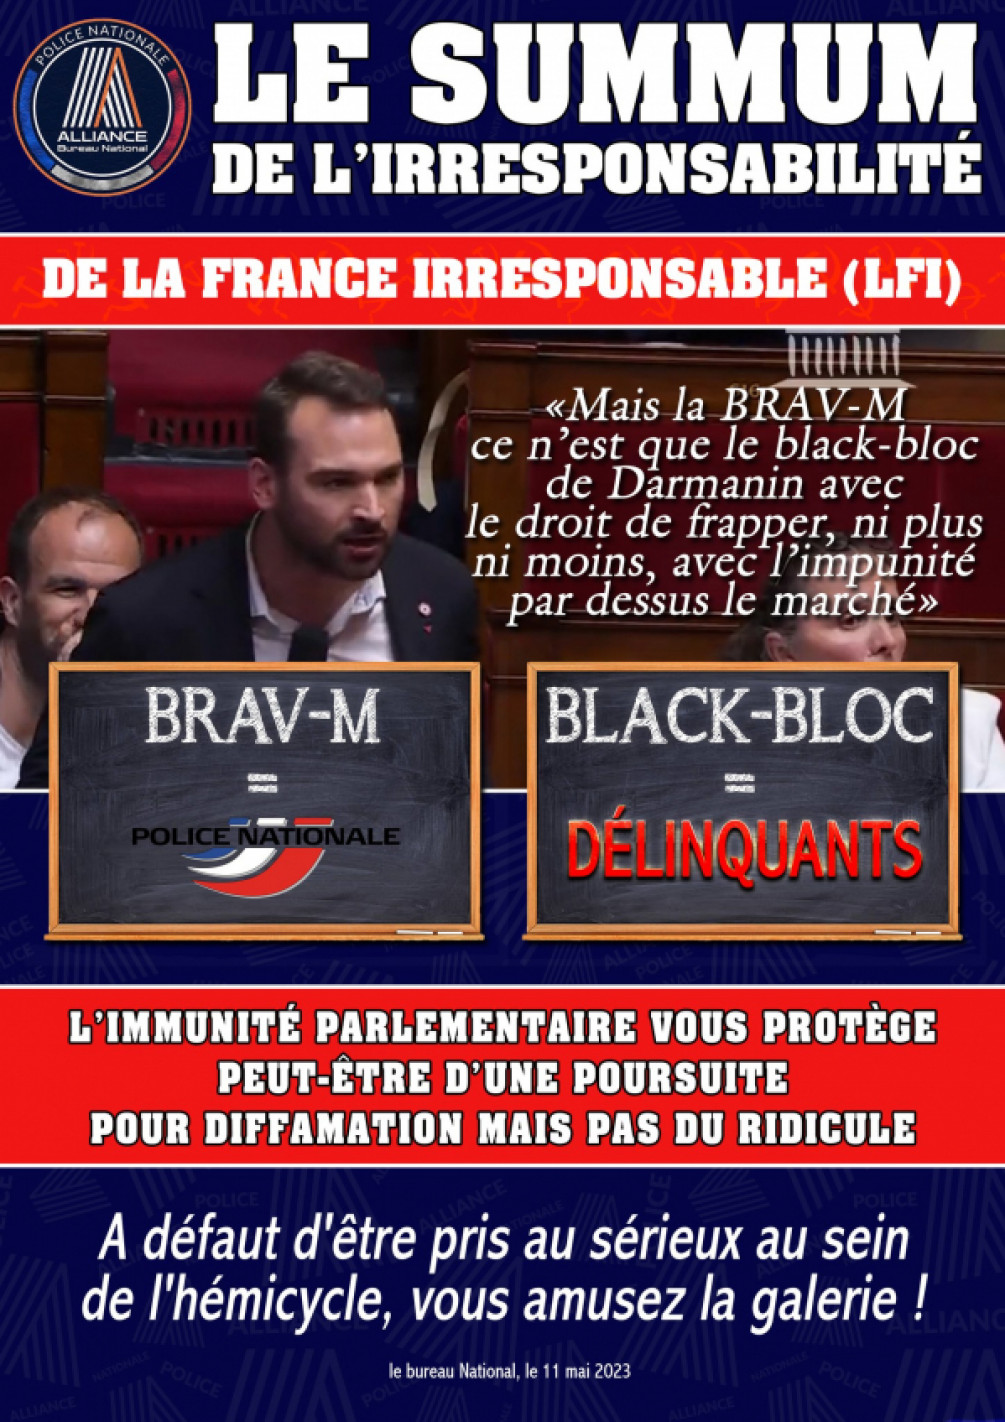 Le SUMMUM de l'irresponsabilité de la France Irresponsable